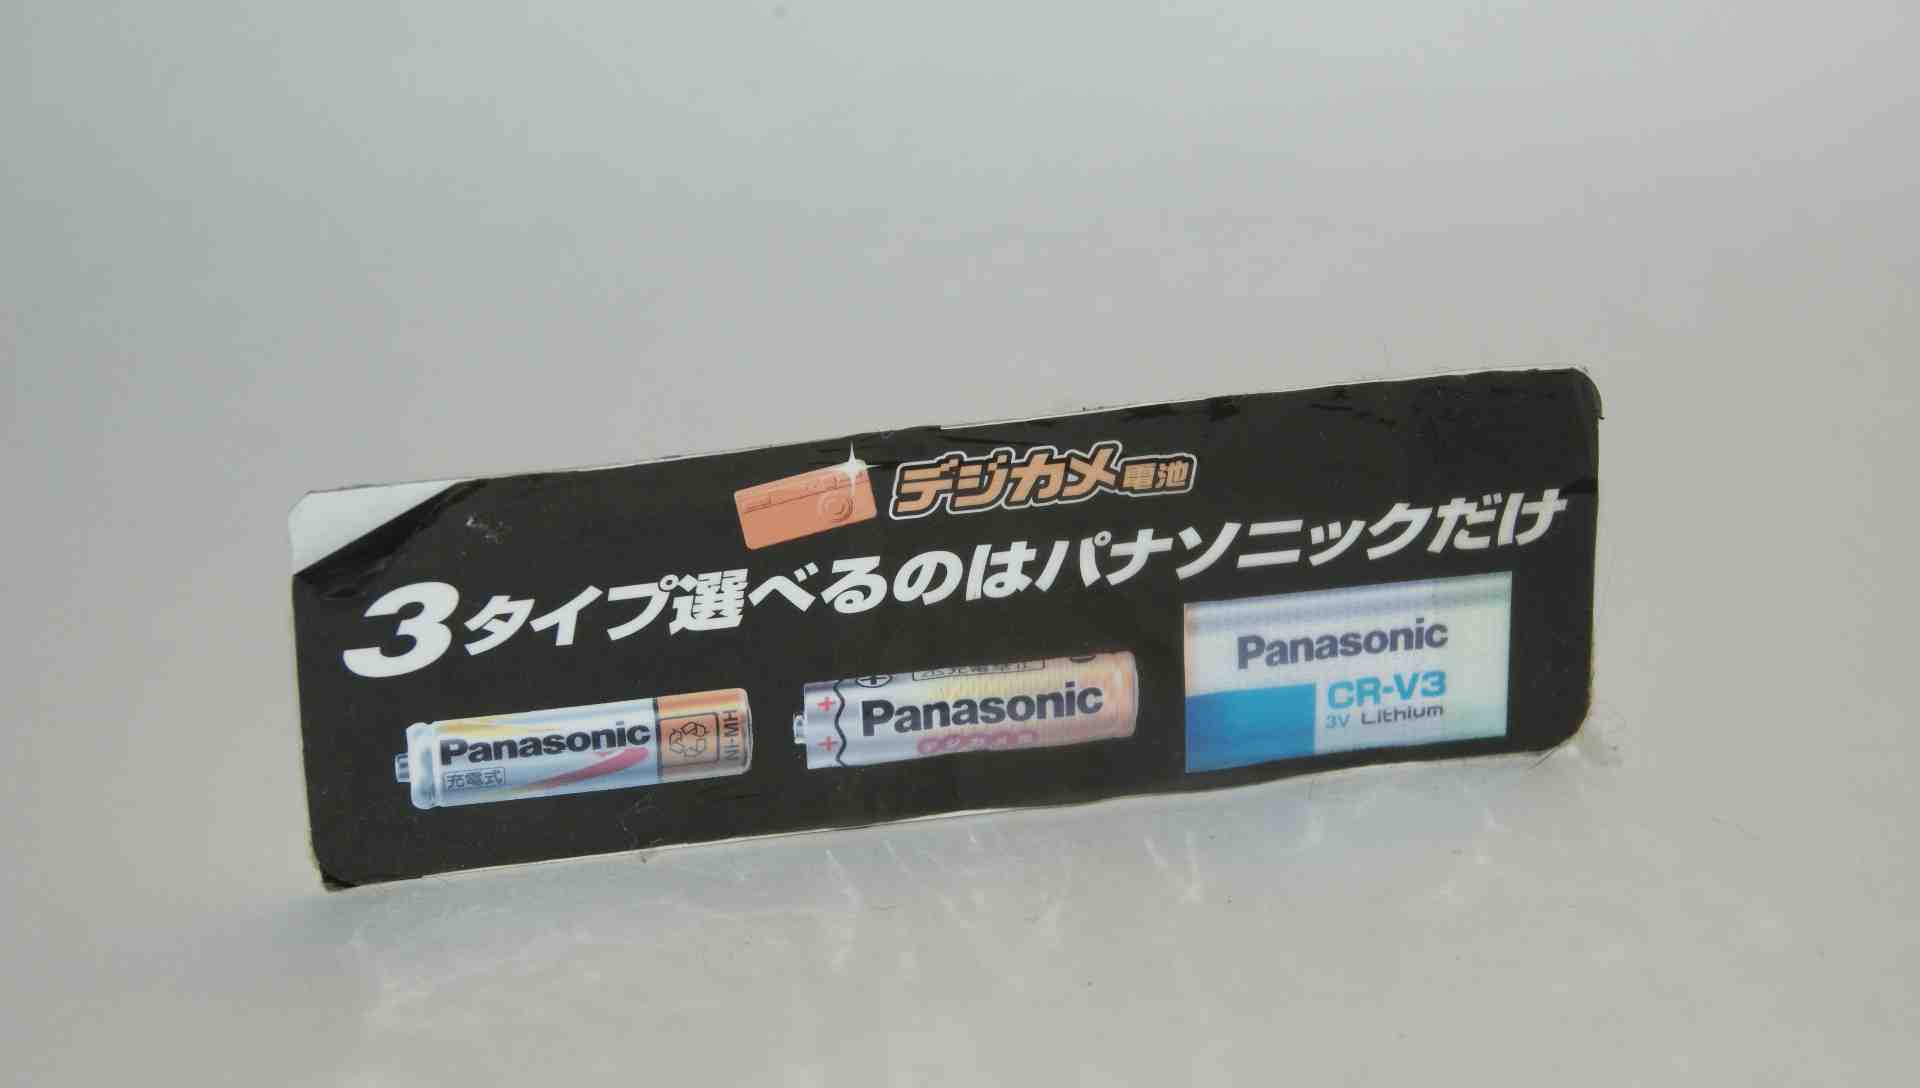 乾電池の画像集 出張所Ⅱ Panasonic 陳列棚販促ステッカー デジカメ電池 3タイプ選べるのはパナソニックだけ